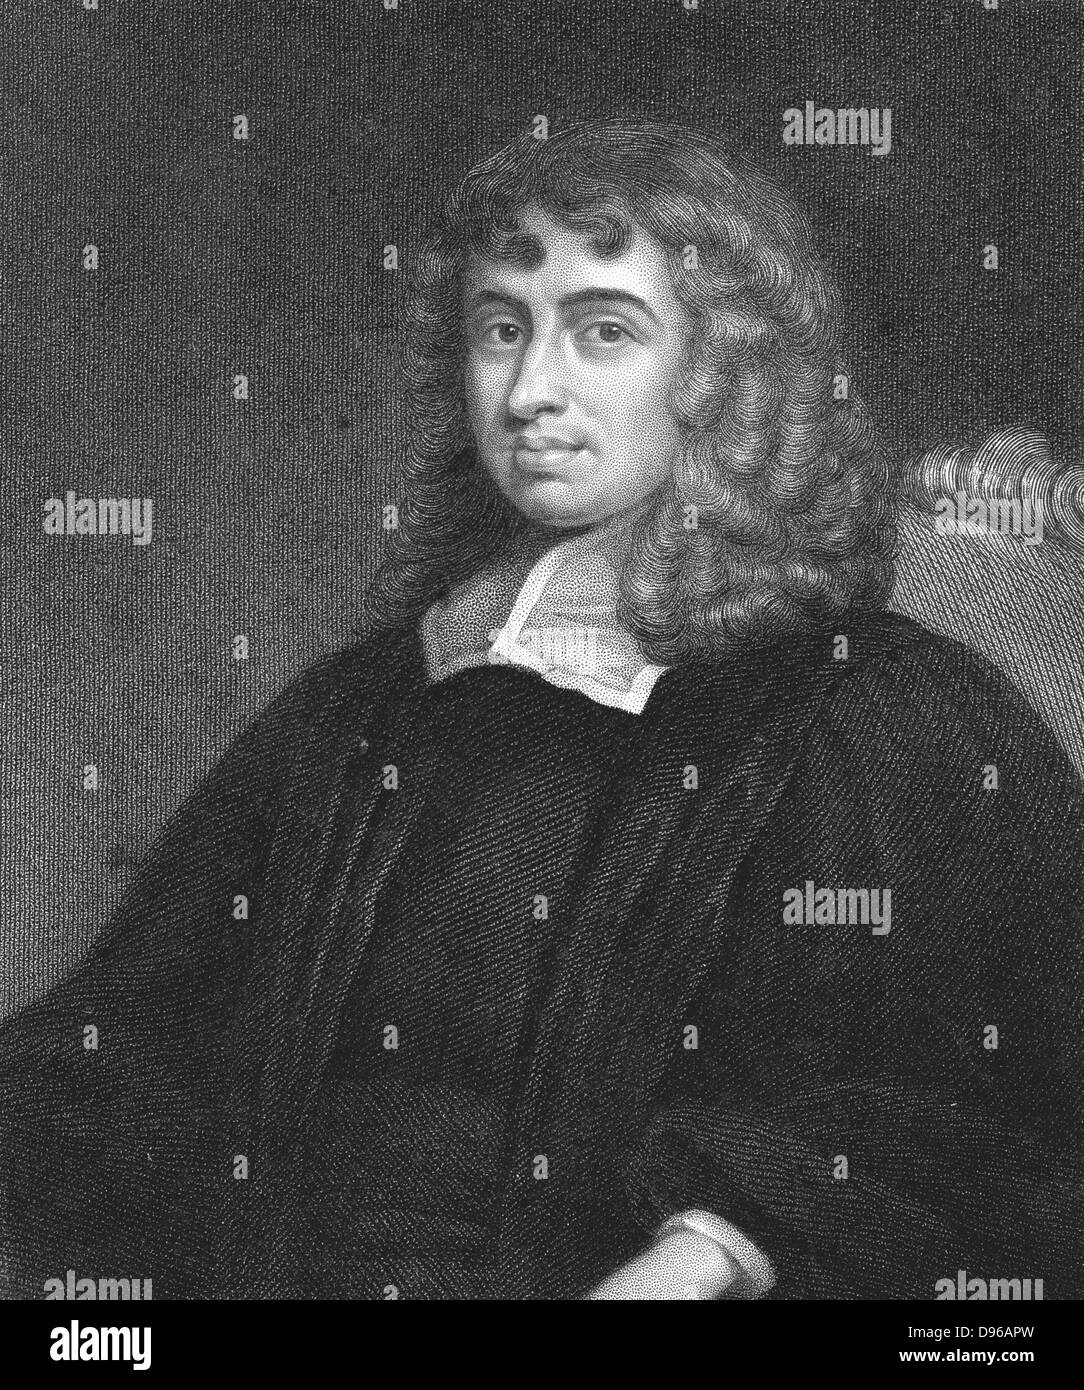 Isaac Barrow (1630-1677) mathématicien anglais et clerc. Le professeur Lucasian de mathématiques à Cambridge 1663, a démissionné en 1669 pour faire place à Isaac Newton. Master of Trinity College, Cambridge, et fondateur de sa bibliothèque. La gravure. Banque D'Images